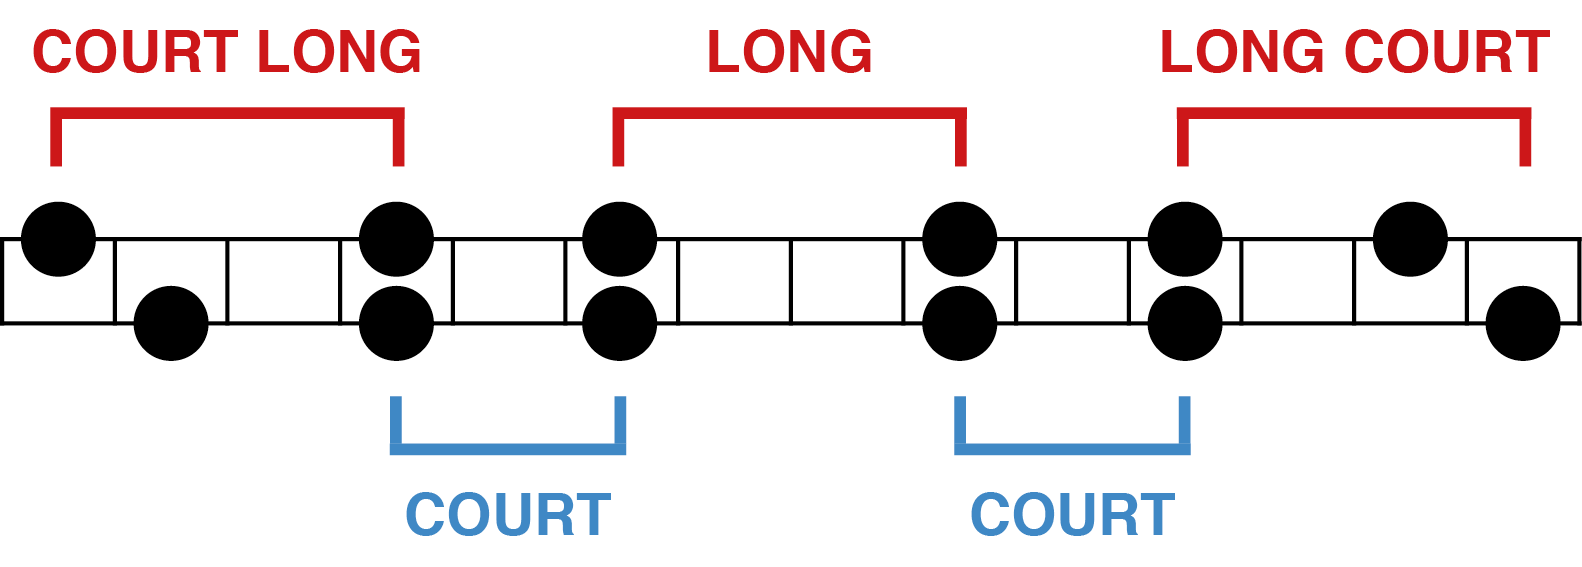 Formule court - long - court - long - court - long - court (gamme pentatonique)